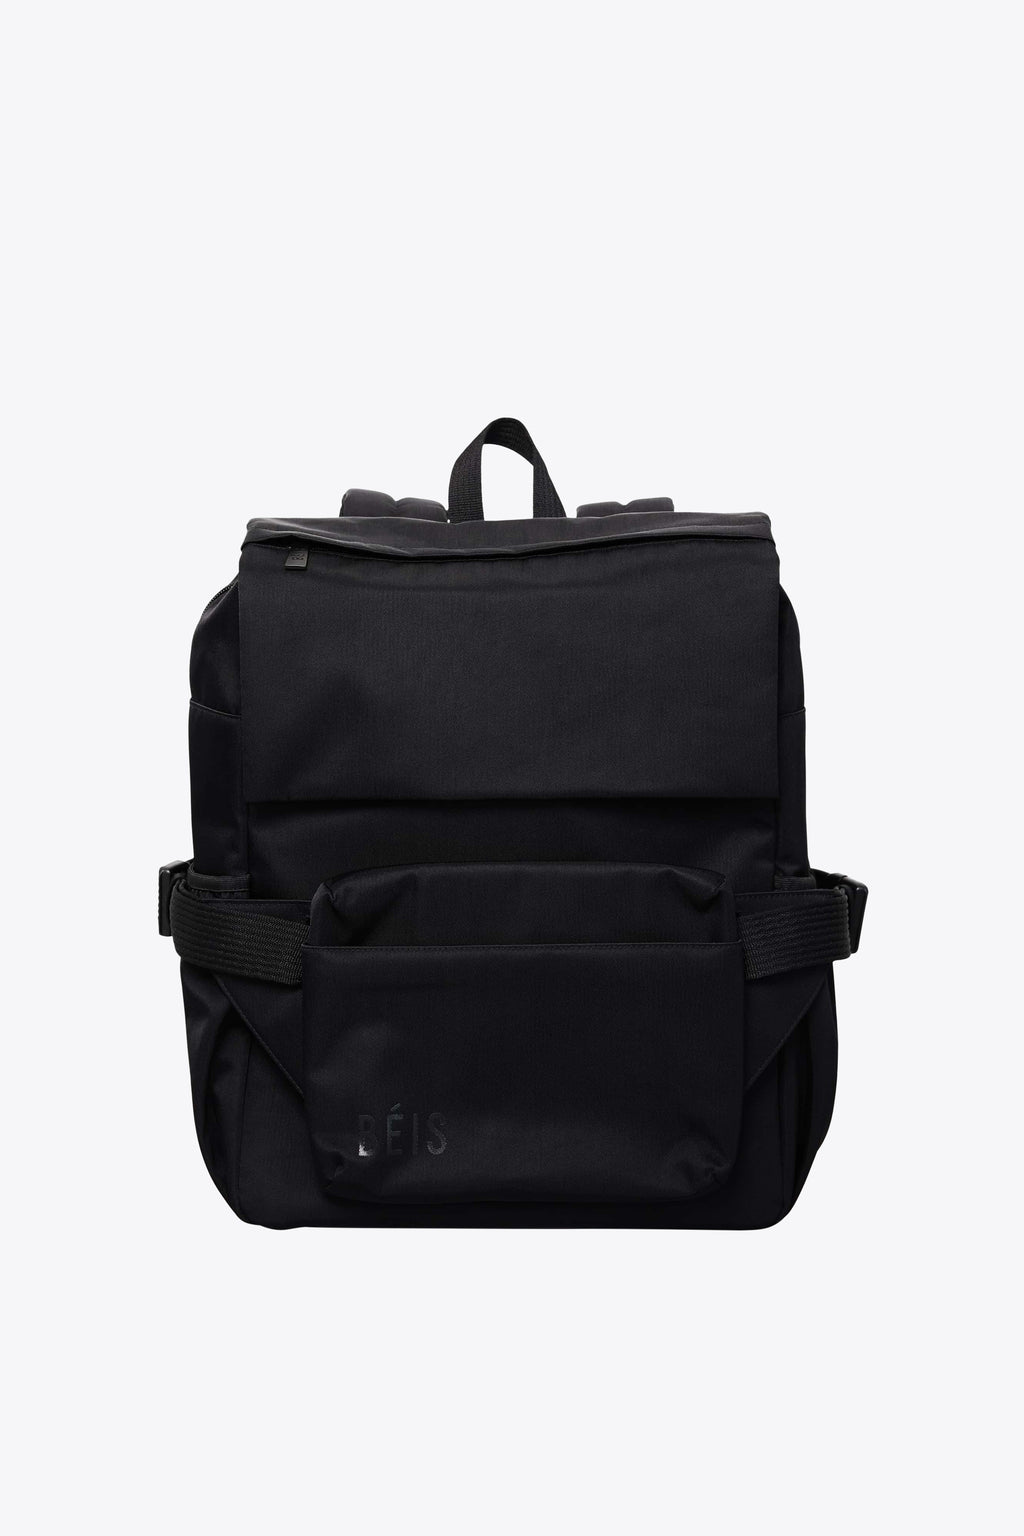 Béis 'The Ultimate Diaper Backpack' in Black - Diaper Bag & Diaper Backpack